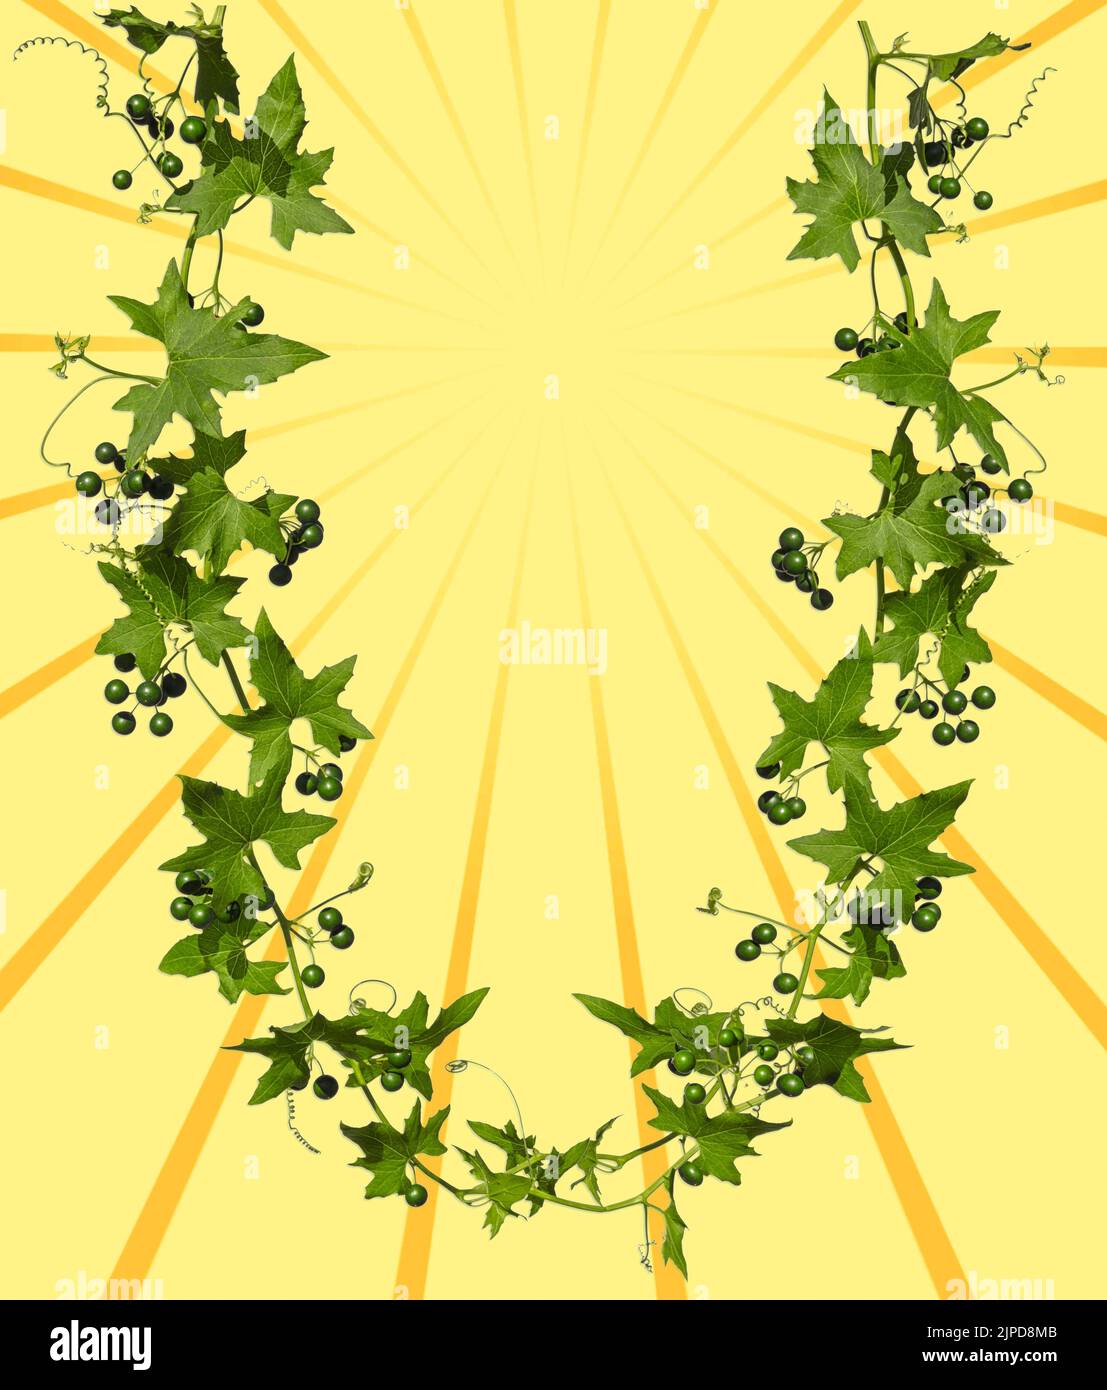 Las ramas de hiedra con hojas verdes y bayas forman la letra U, con espacio de copia para su texto en un fondo de la imagen de los rayos del sol. Foto de stock